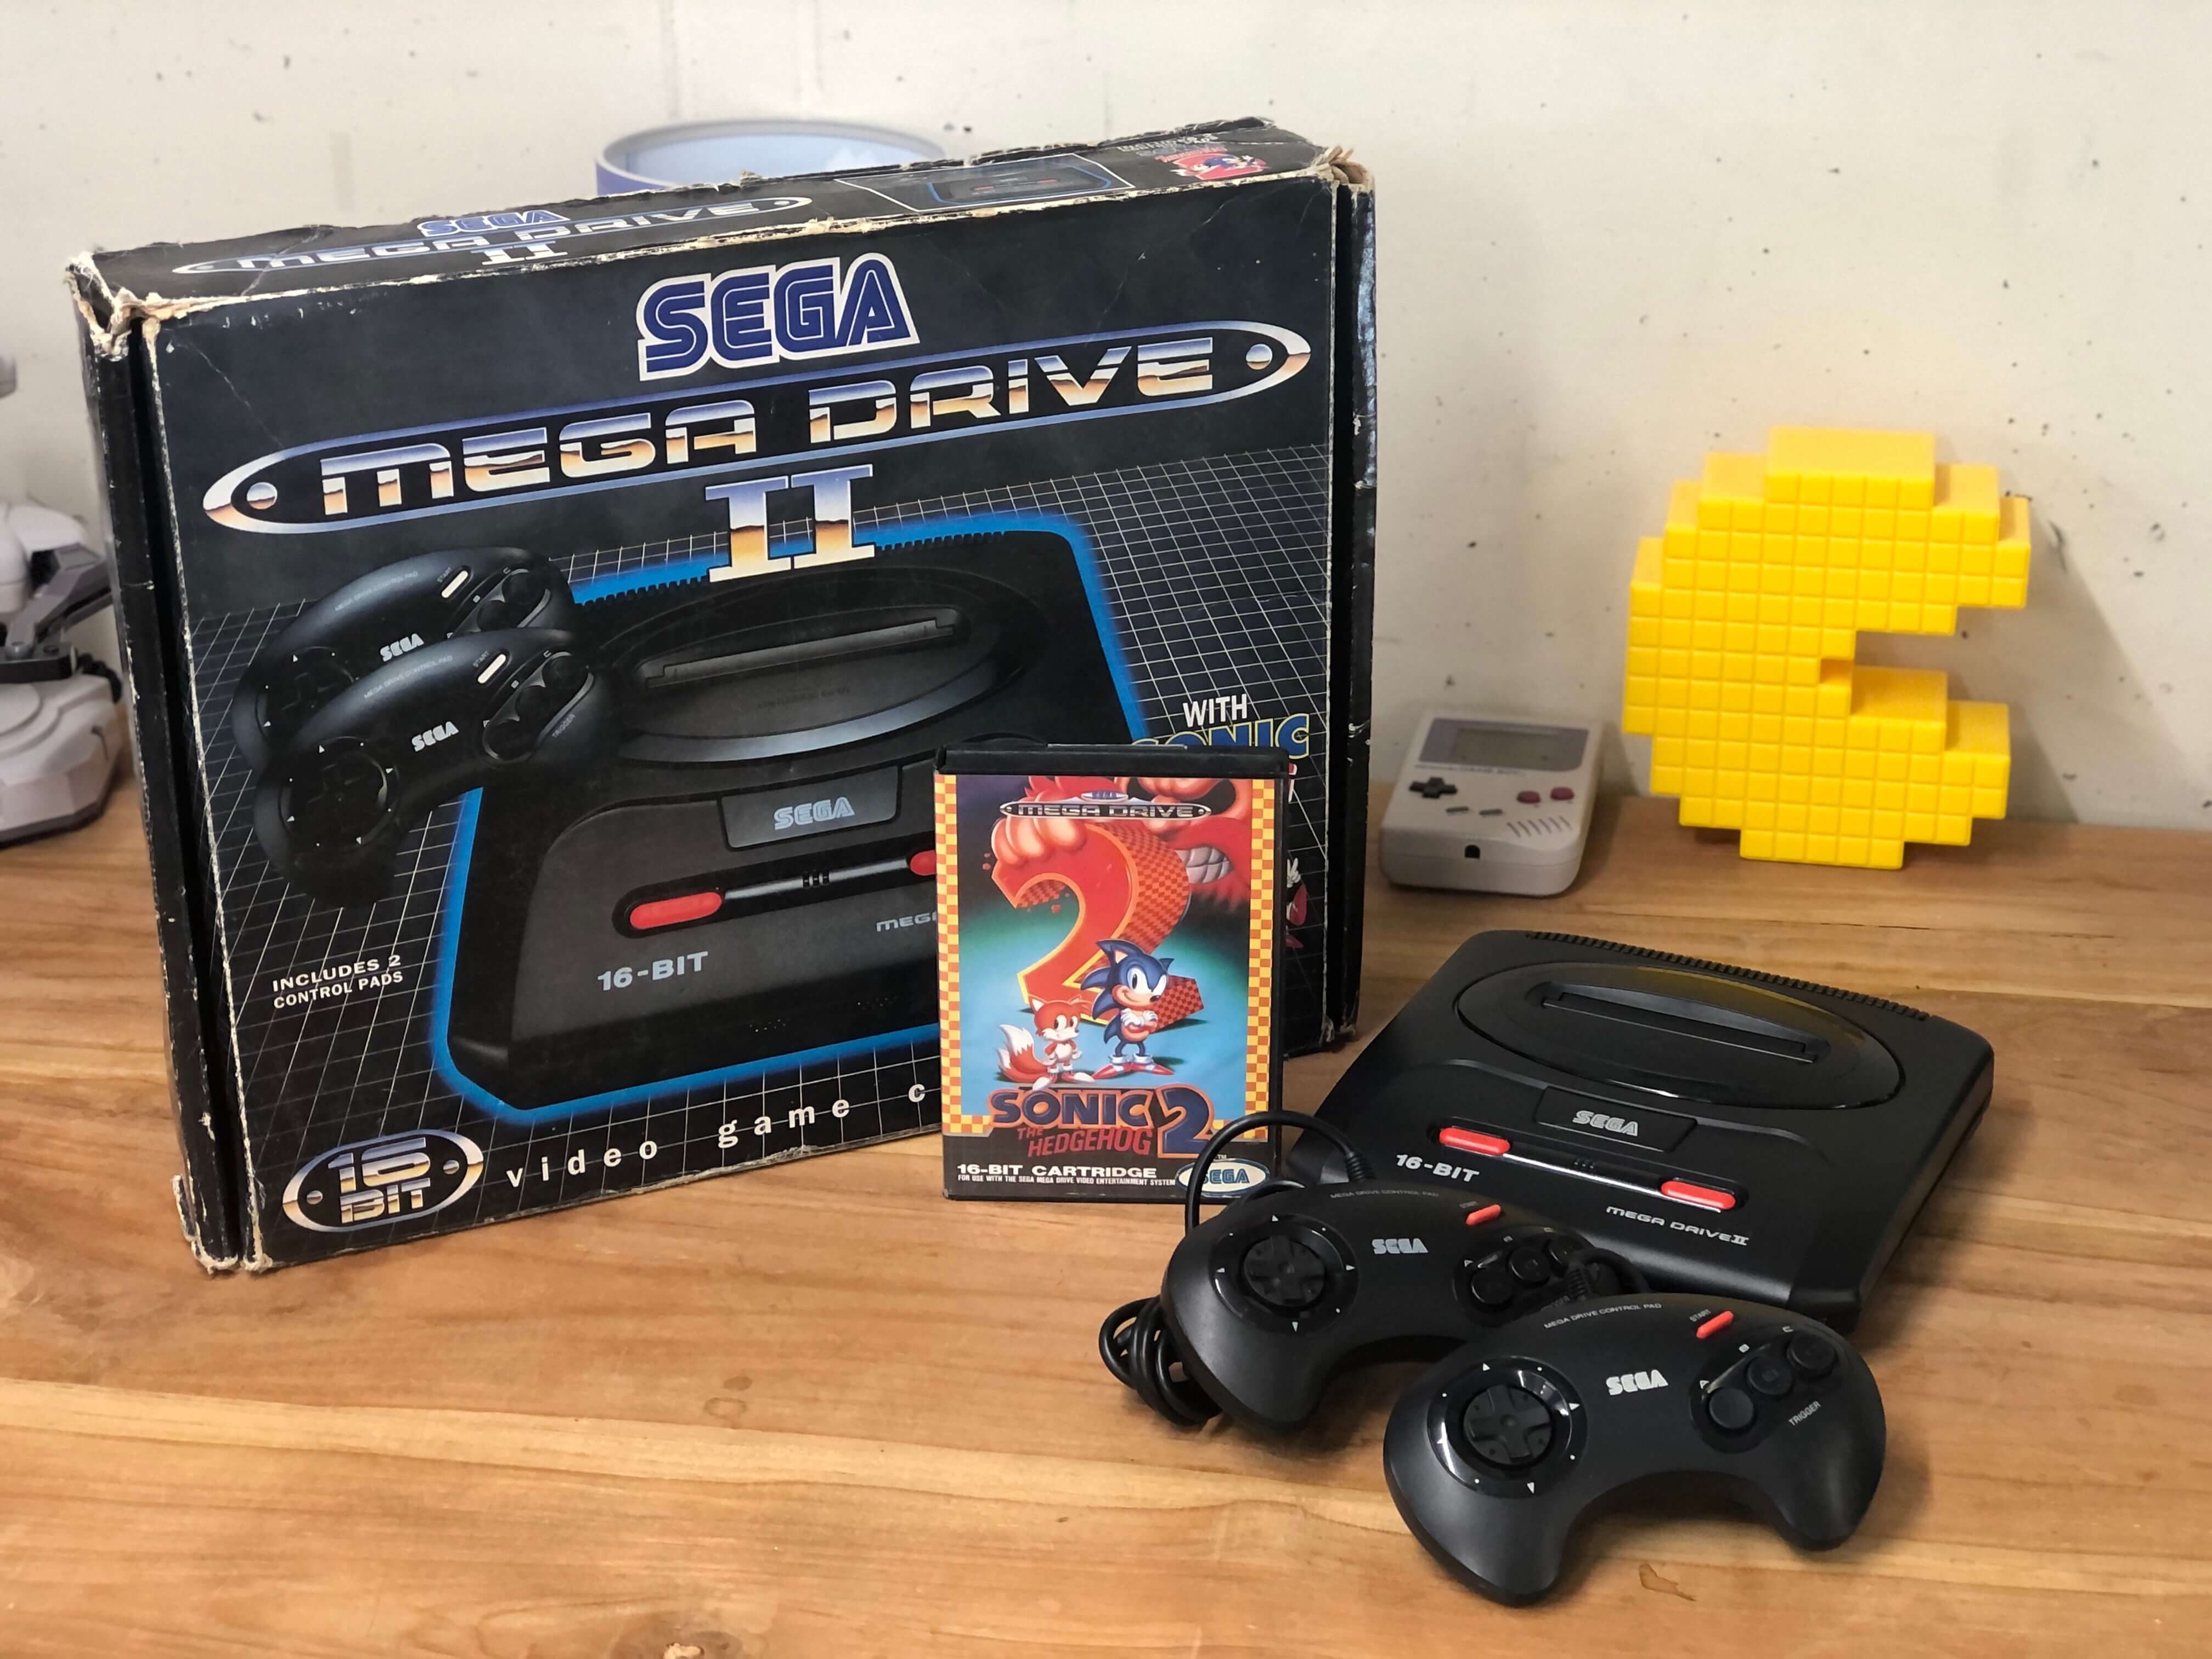 Sega Mega Drive II Console [Complete] Kopen | Sega Mega Drive Hardware